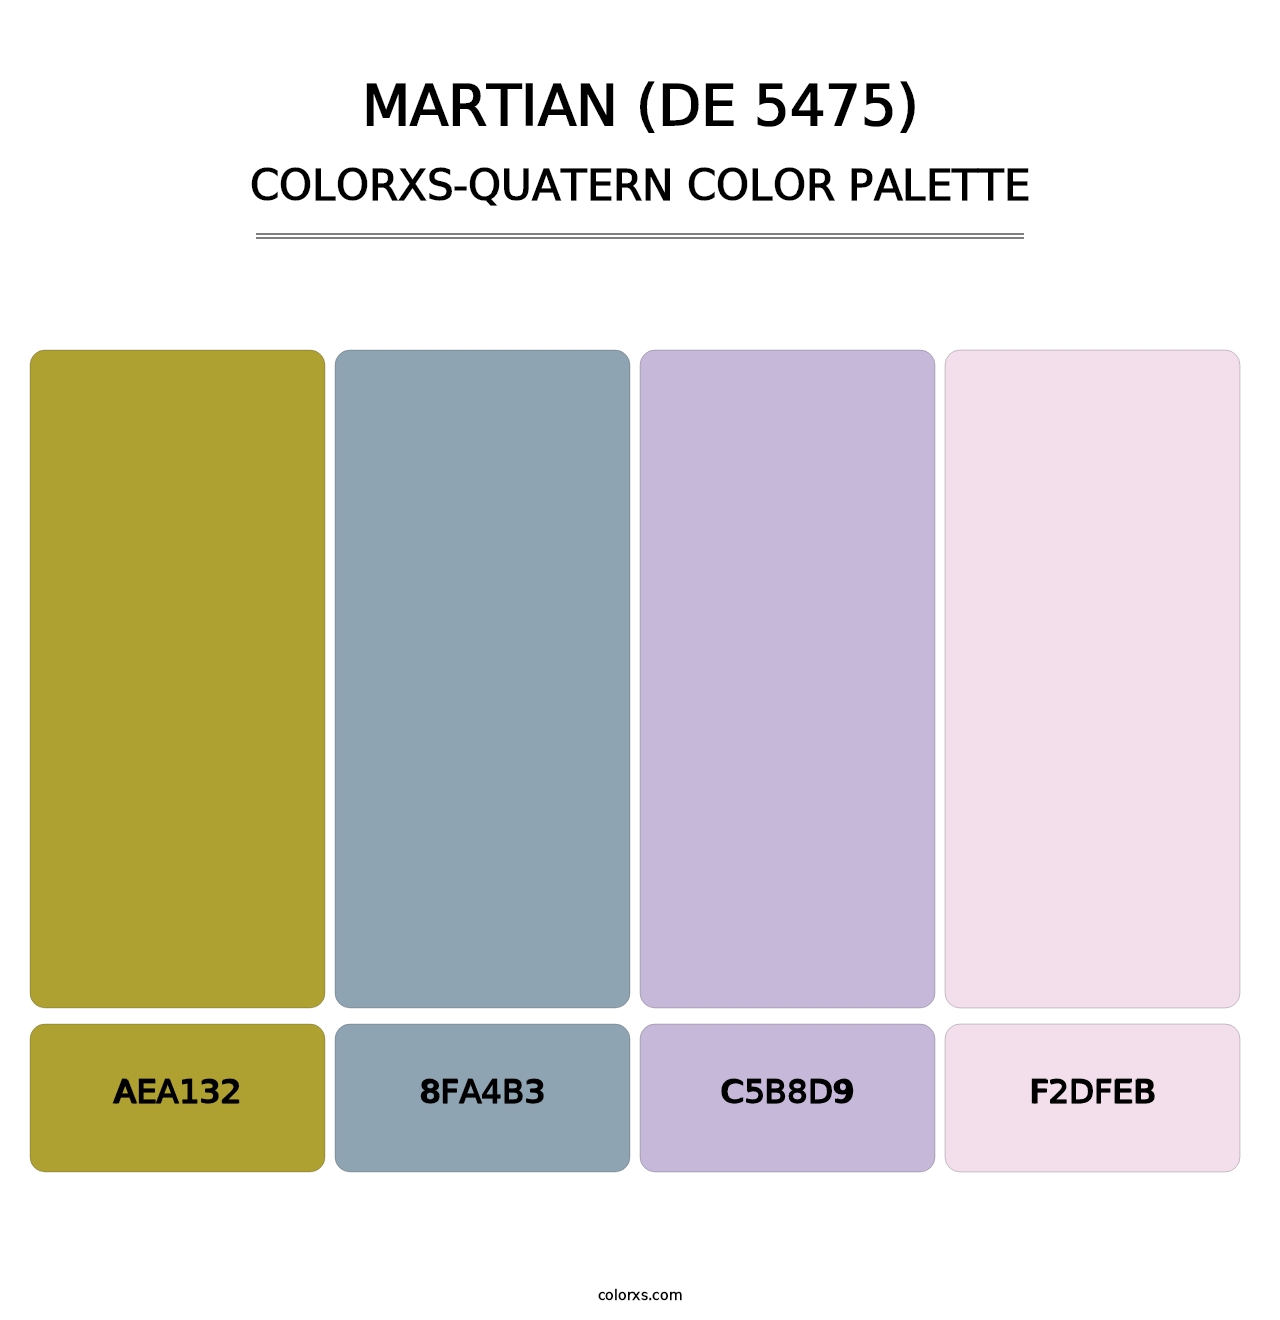 Martian (DE 5475) - Colorxs Quatern Palette